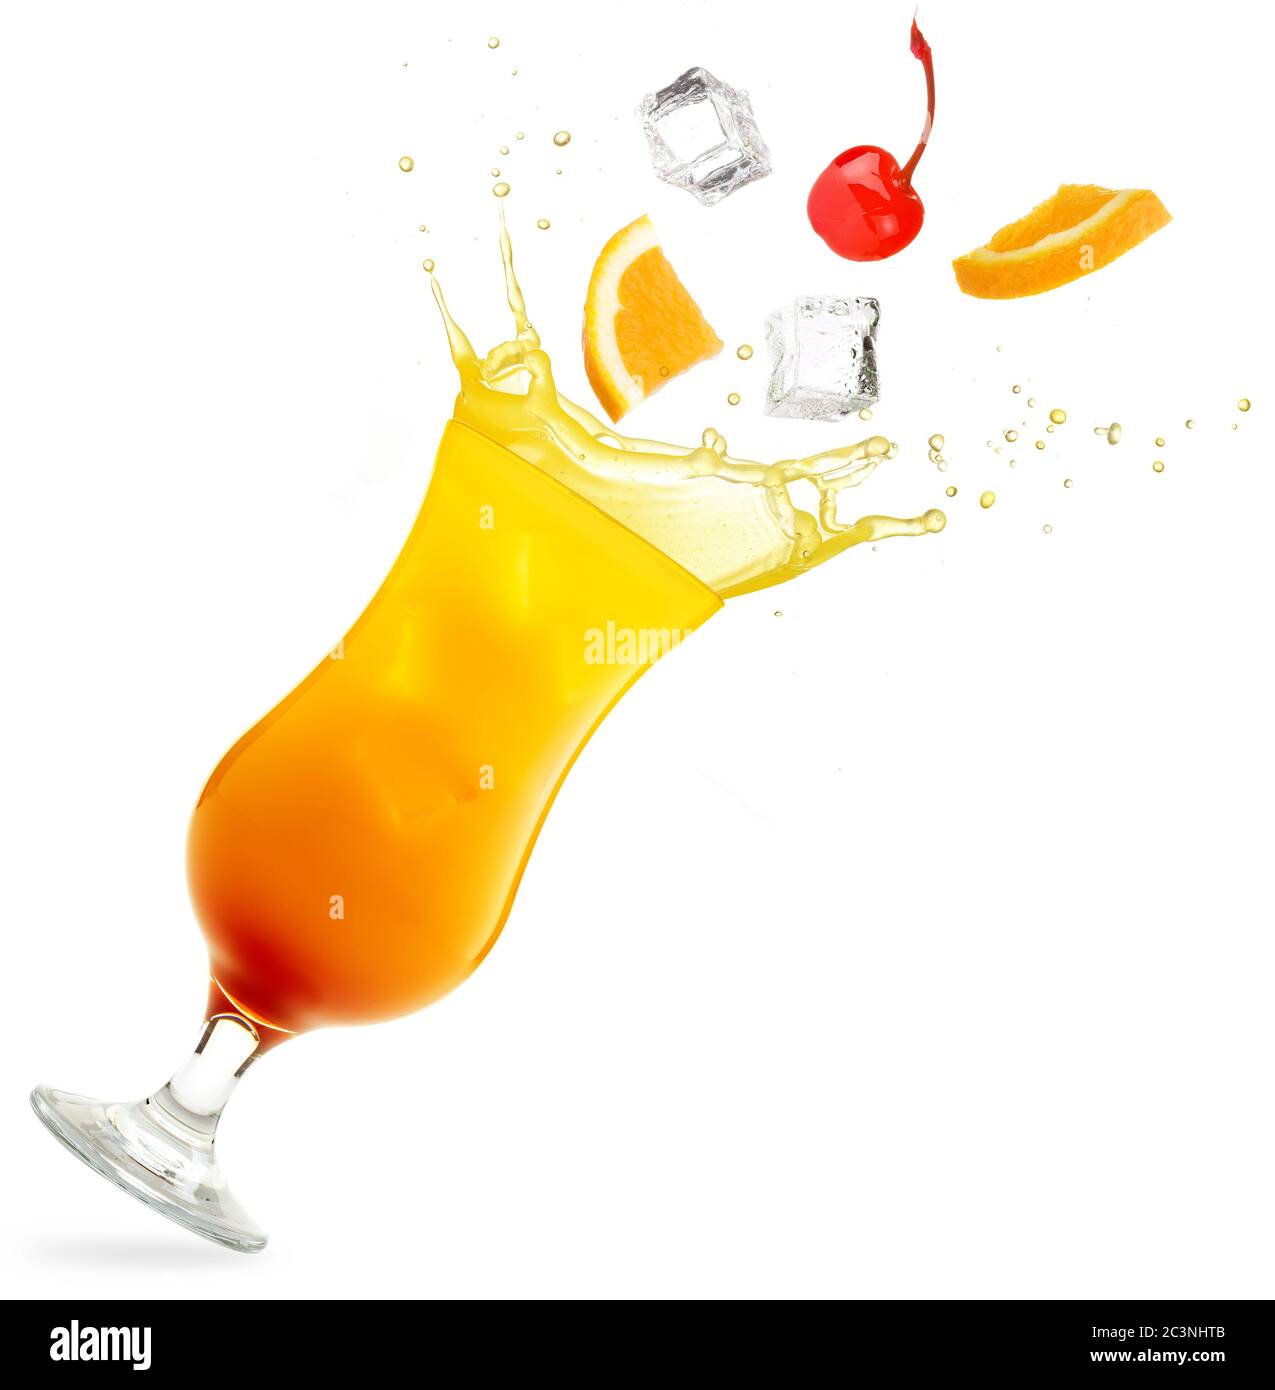 frutta che cade in un bicchiere inclinato di tequila alba isolato su sfondo bianco Foto Stock